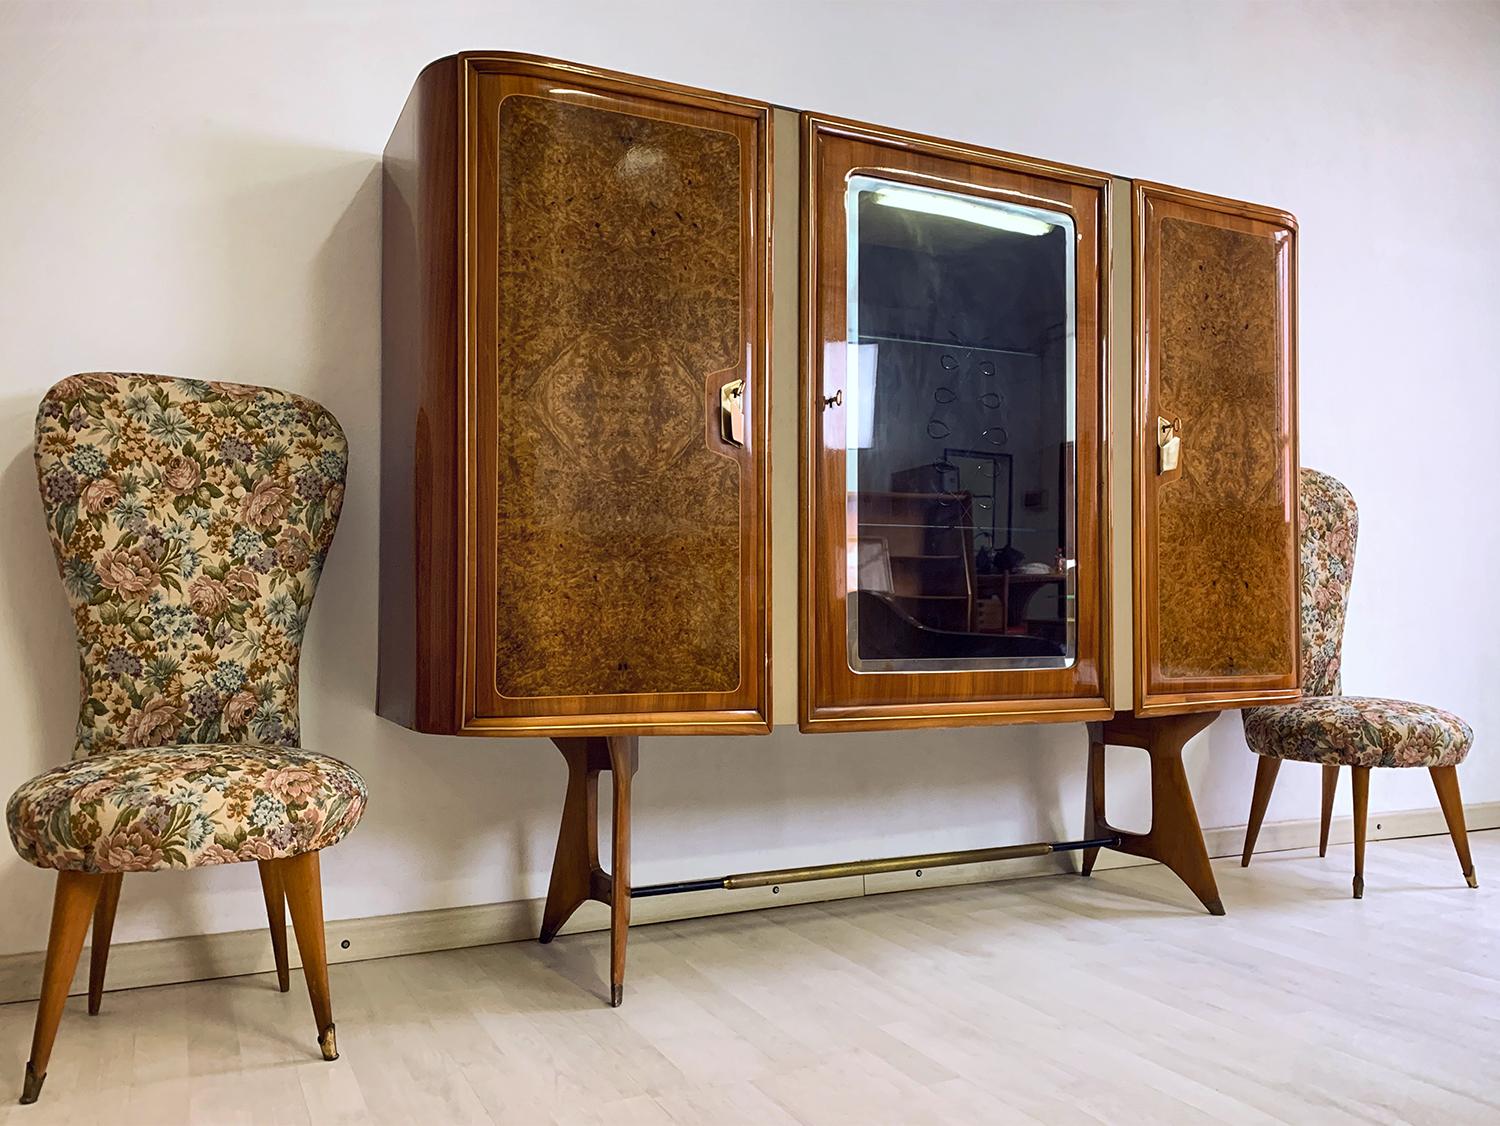 Superbe buffet et / ou meuble de bar conçu par Vittorio Dassi dans les années 1950.
Il s'agit d'un très bel objet réalisé en matériaux précieux. Les deux portes latérales sont en racine de bruyère de bouleau, terminées par de fines poignées en